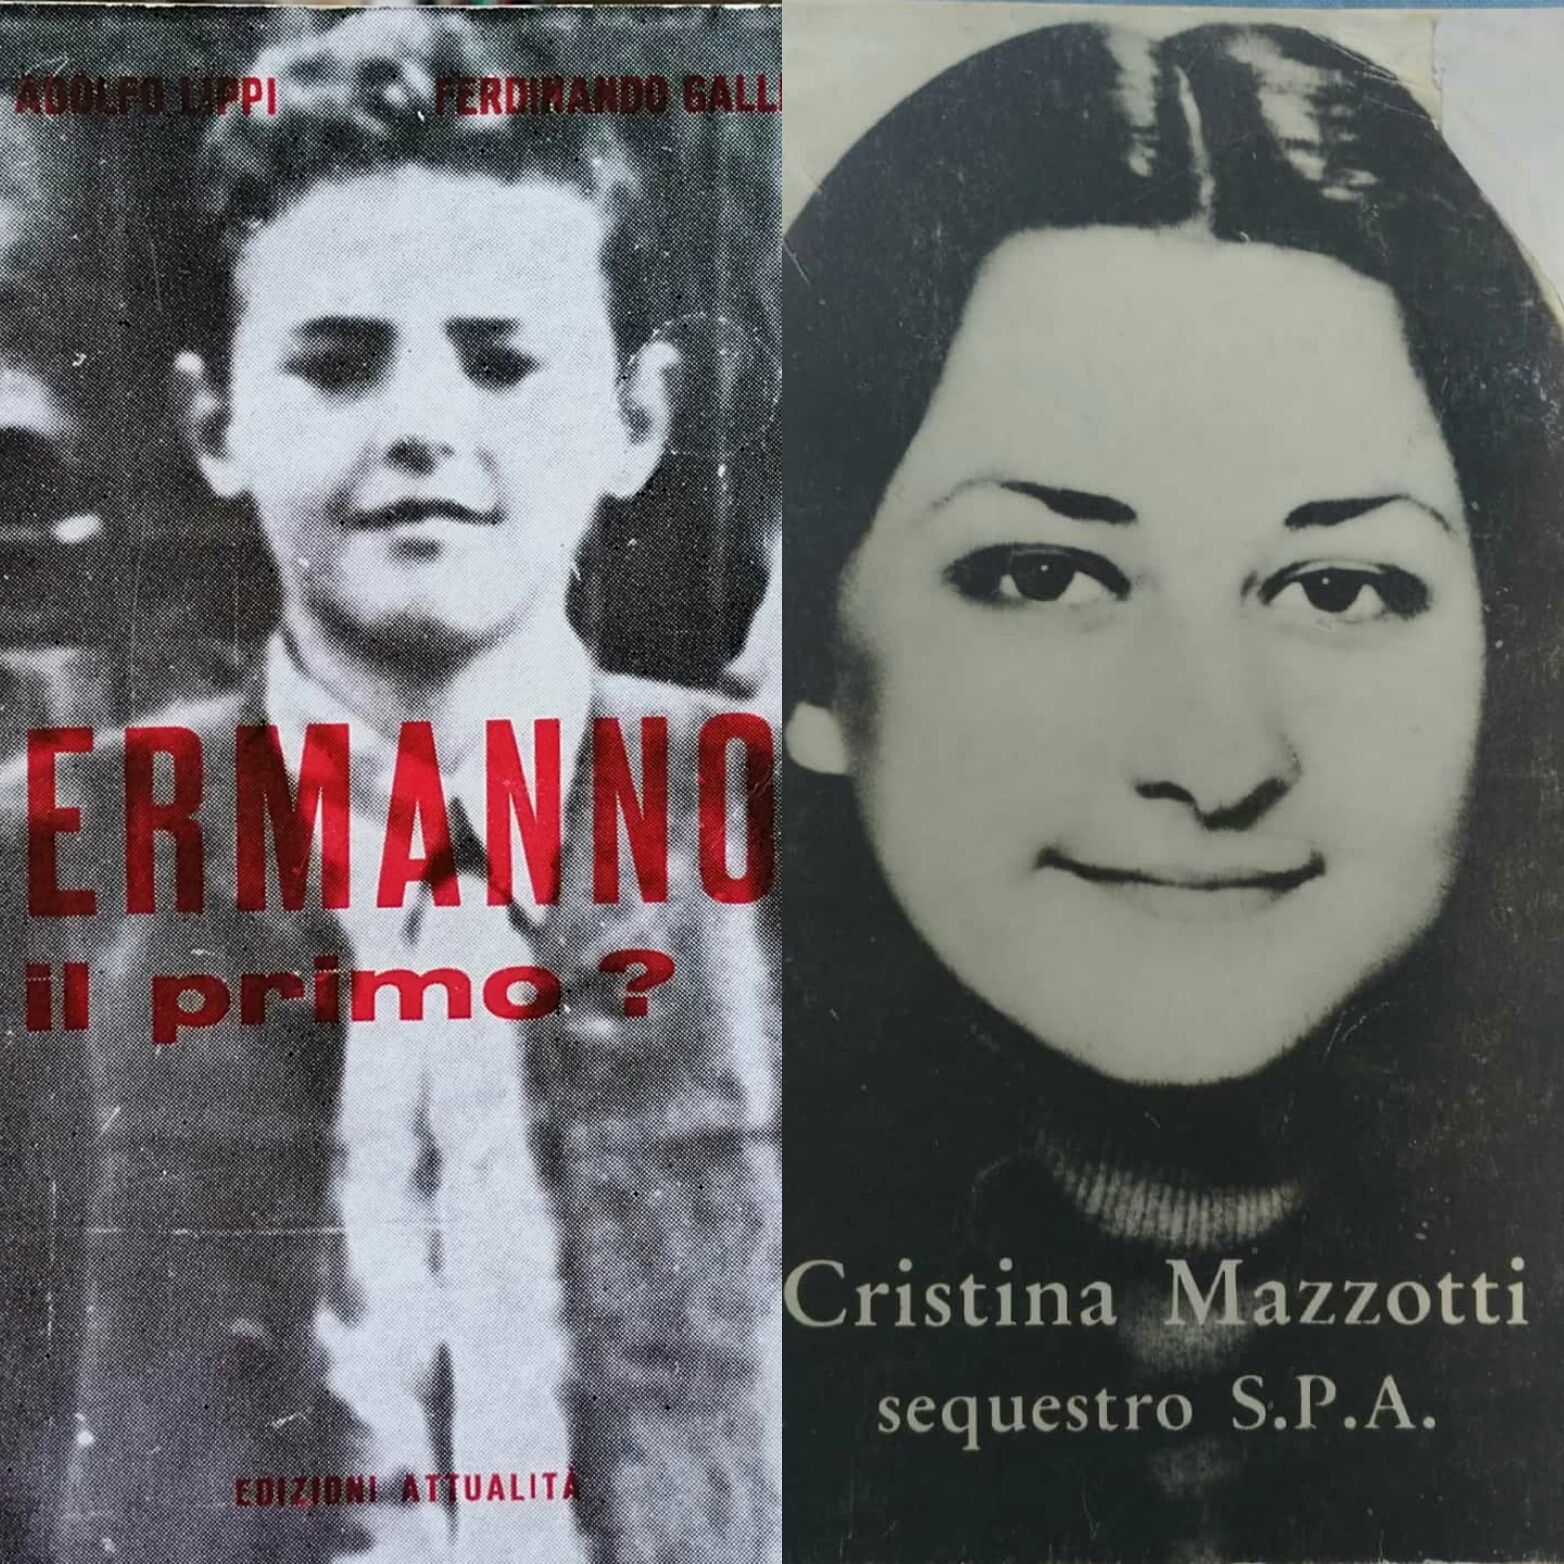 Ermanno Lavorini e Cristina Mazzotti: i libri introvabili su 2 casi scottanti